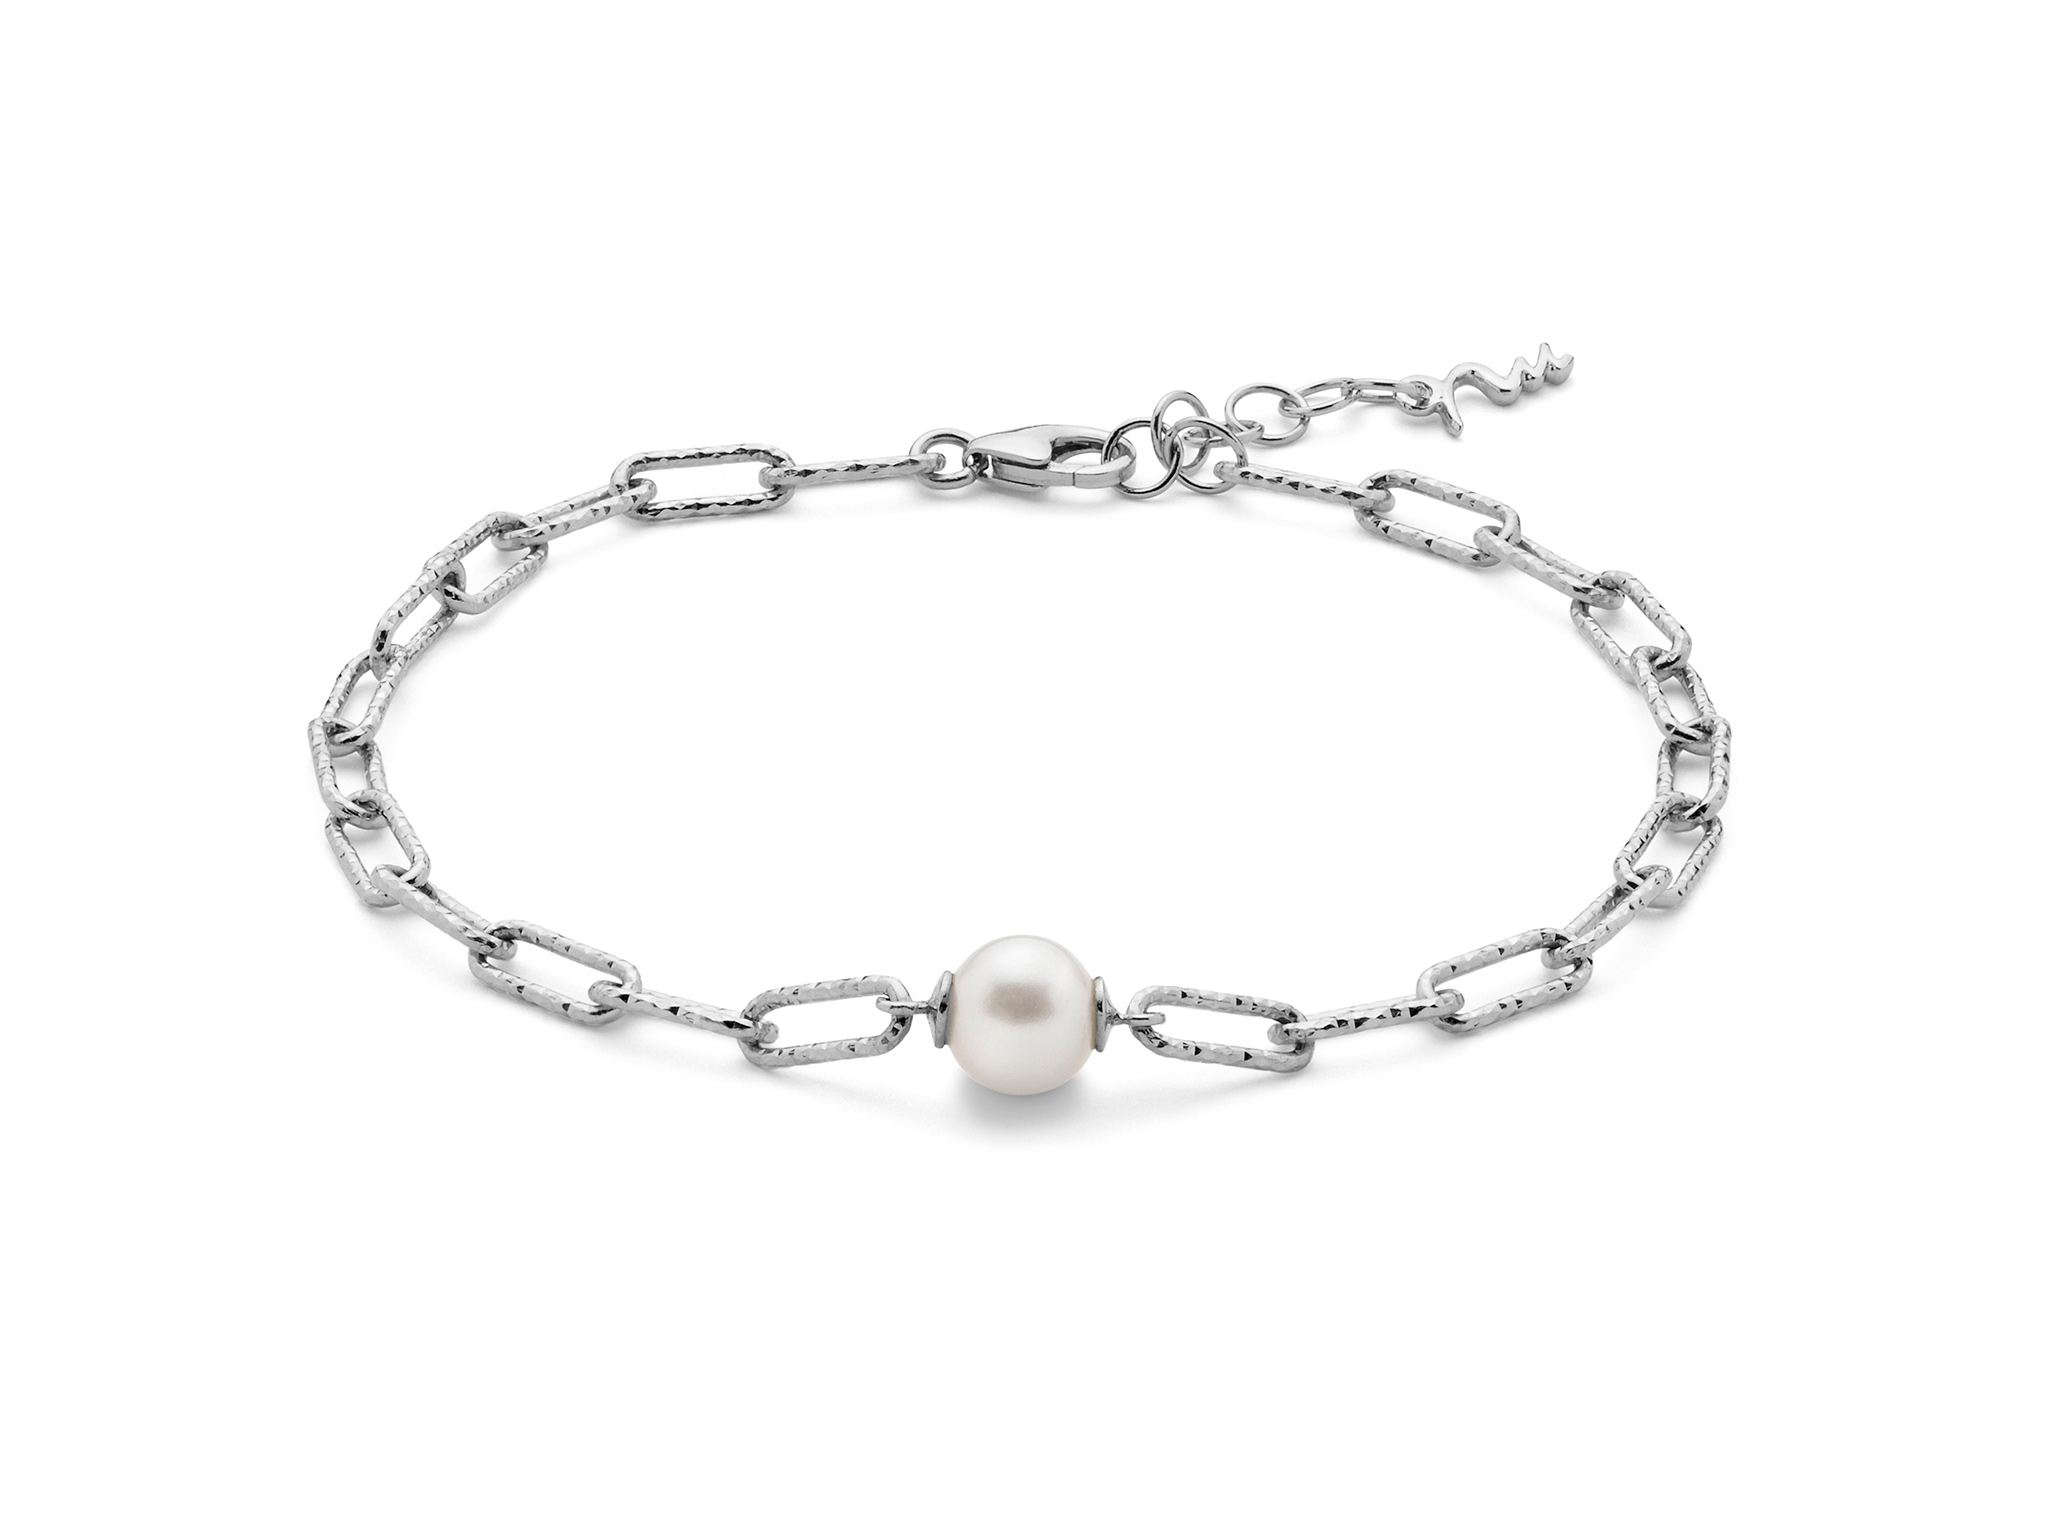 Bracciale con catena a maglia piccola, in argento con perla. - PBR3140B